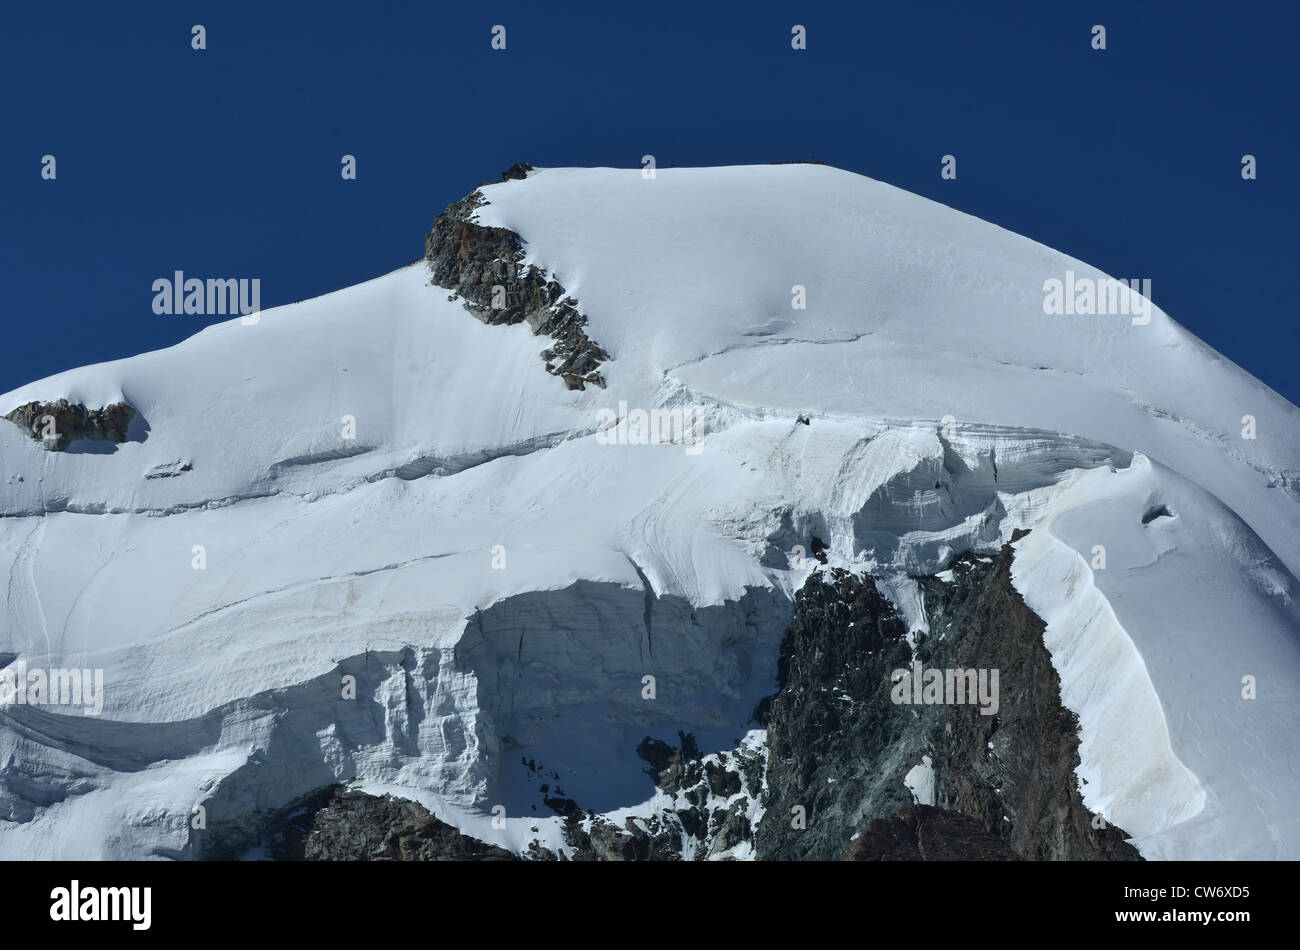 Il vertice e la parete nord del Allalinhorn nel sud delle alpi svizzere tra Zermatt e Saas Fee. Mostra un team di scalatori Foto Stock